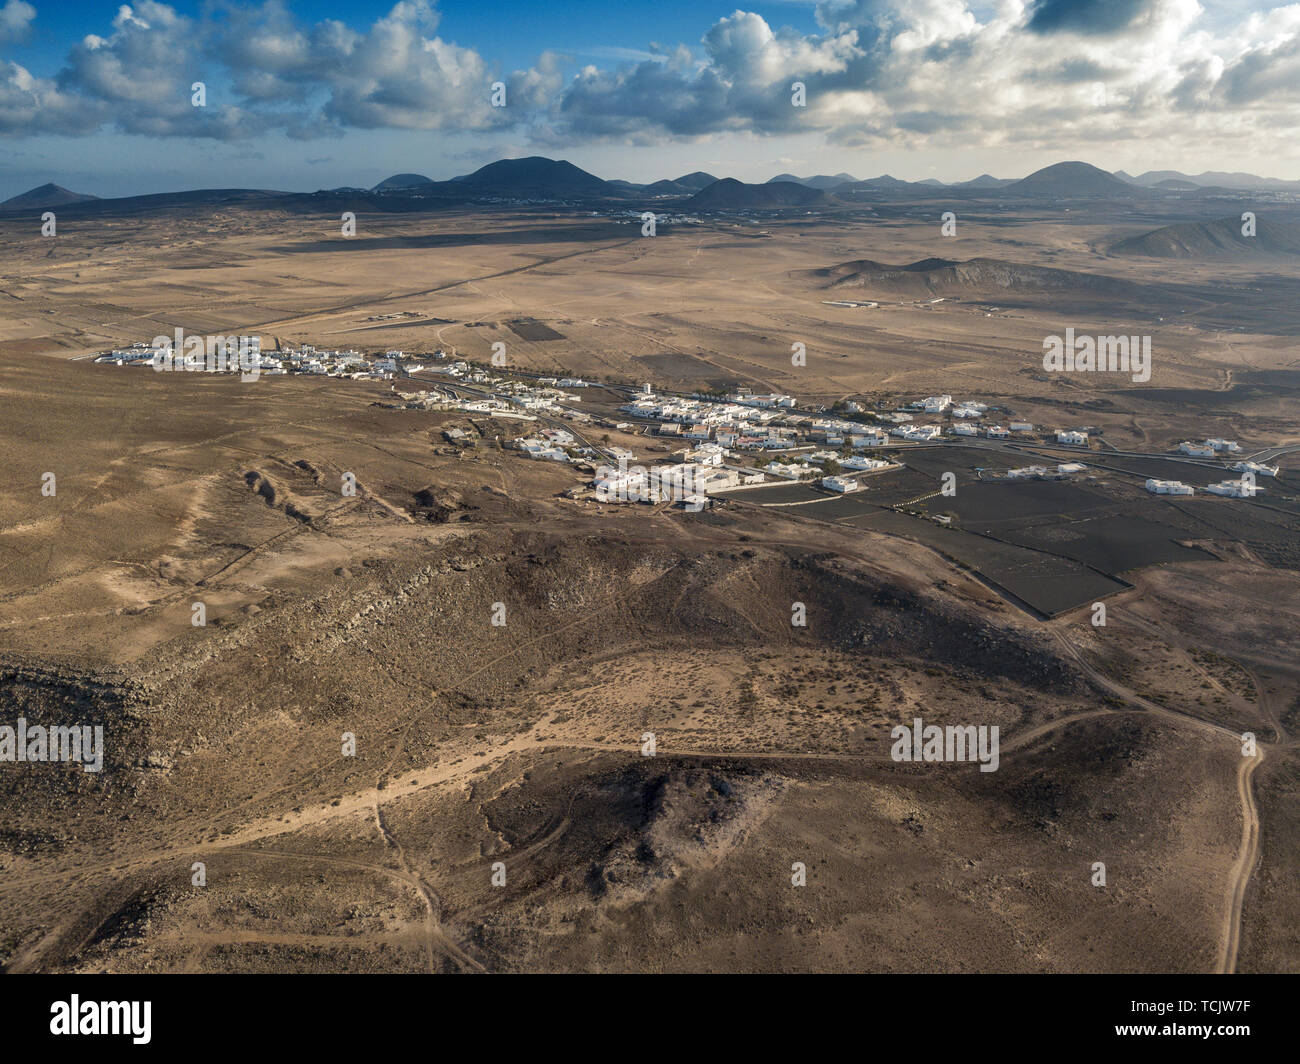 Vue aérienne d'un paysage désertique, sur l'île de Lanzarote, îles Canaries, Espagne. Montagnes du village de Soo et à l'arrière-plan. Los Jameos Playa Banque D'Images